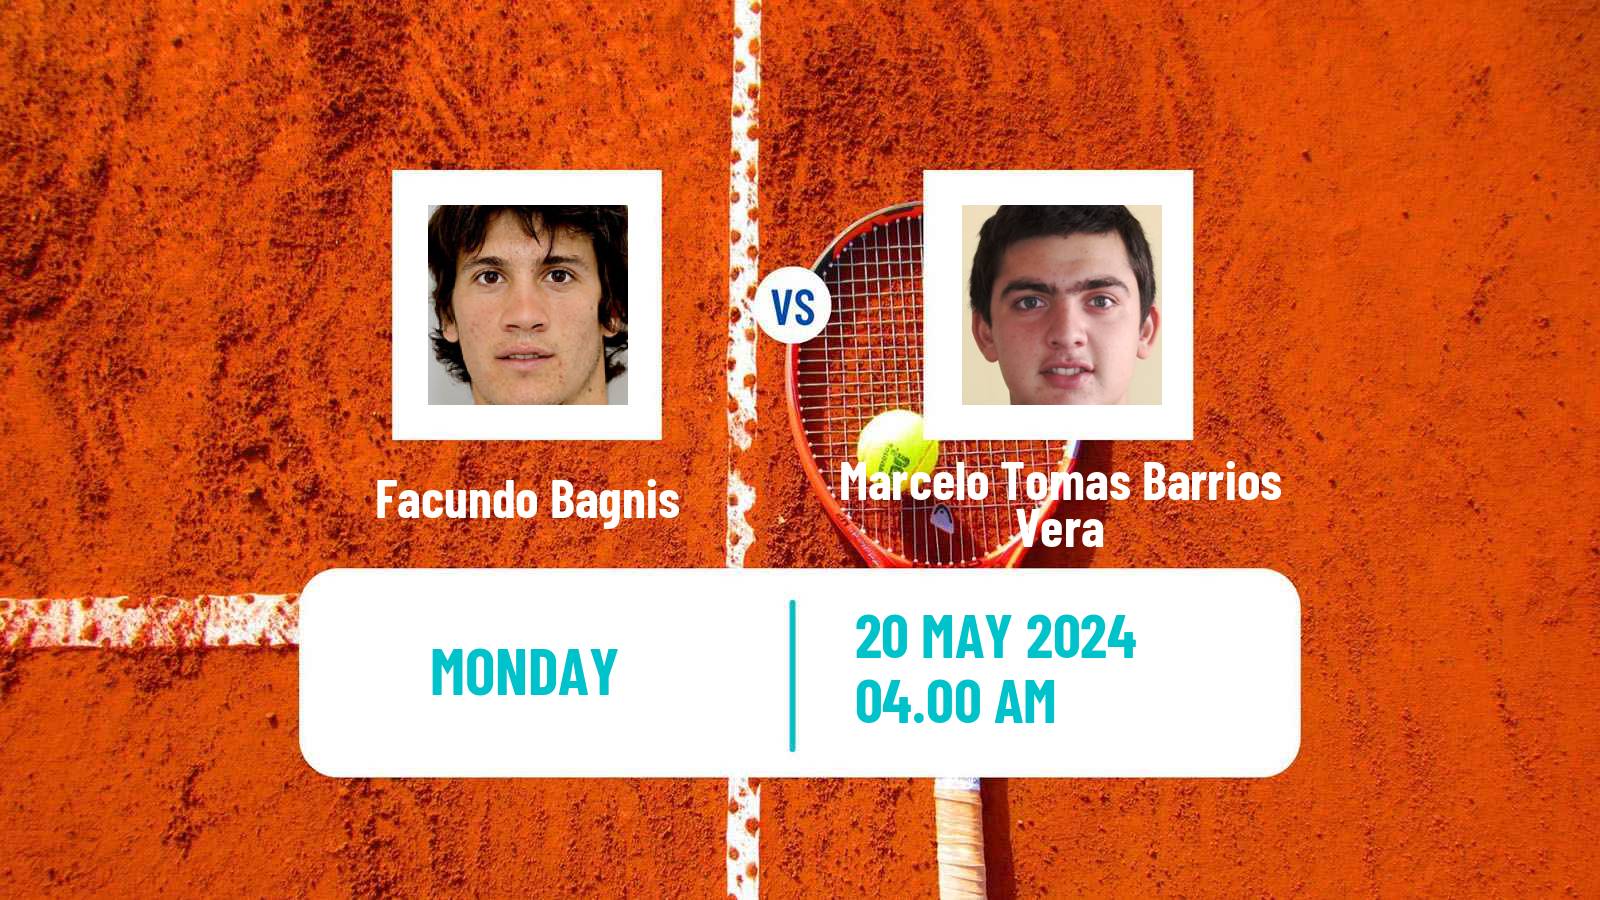 Tennis ATP Roland Garros Facundo Bagnis - Marcelo Tomas Barrios Vera